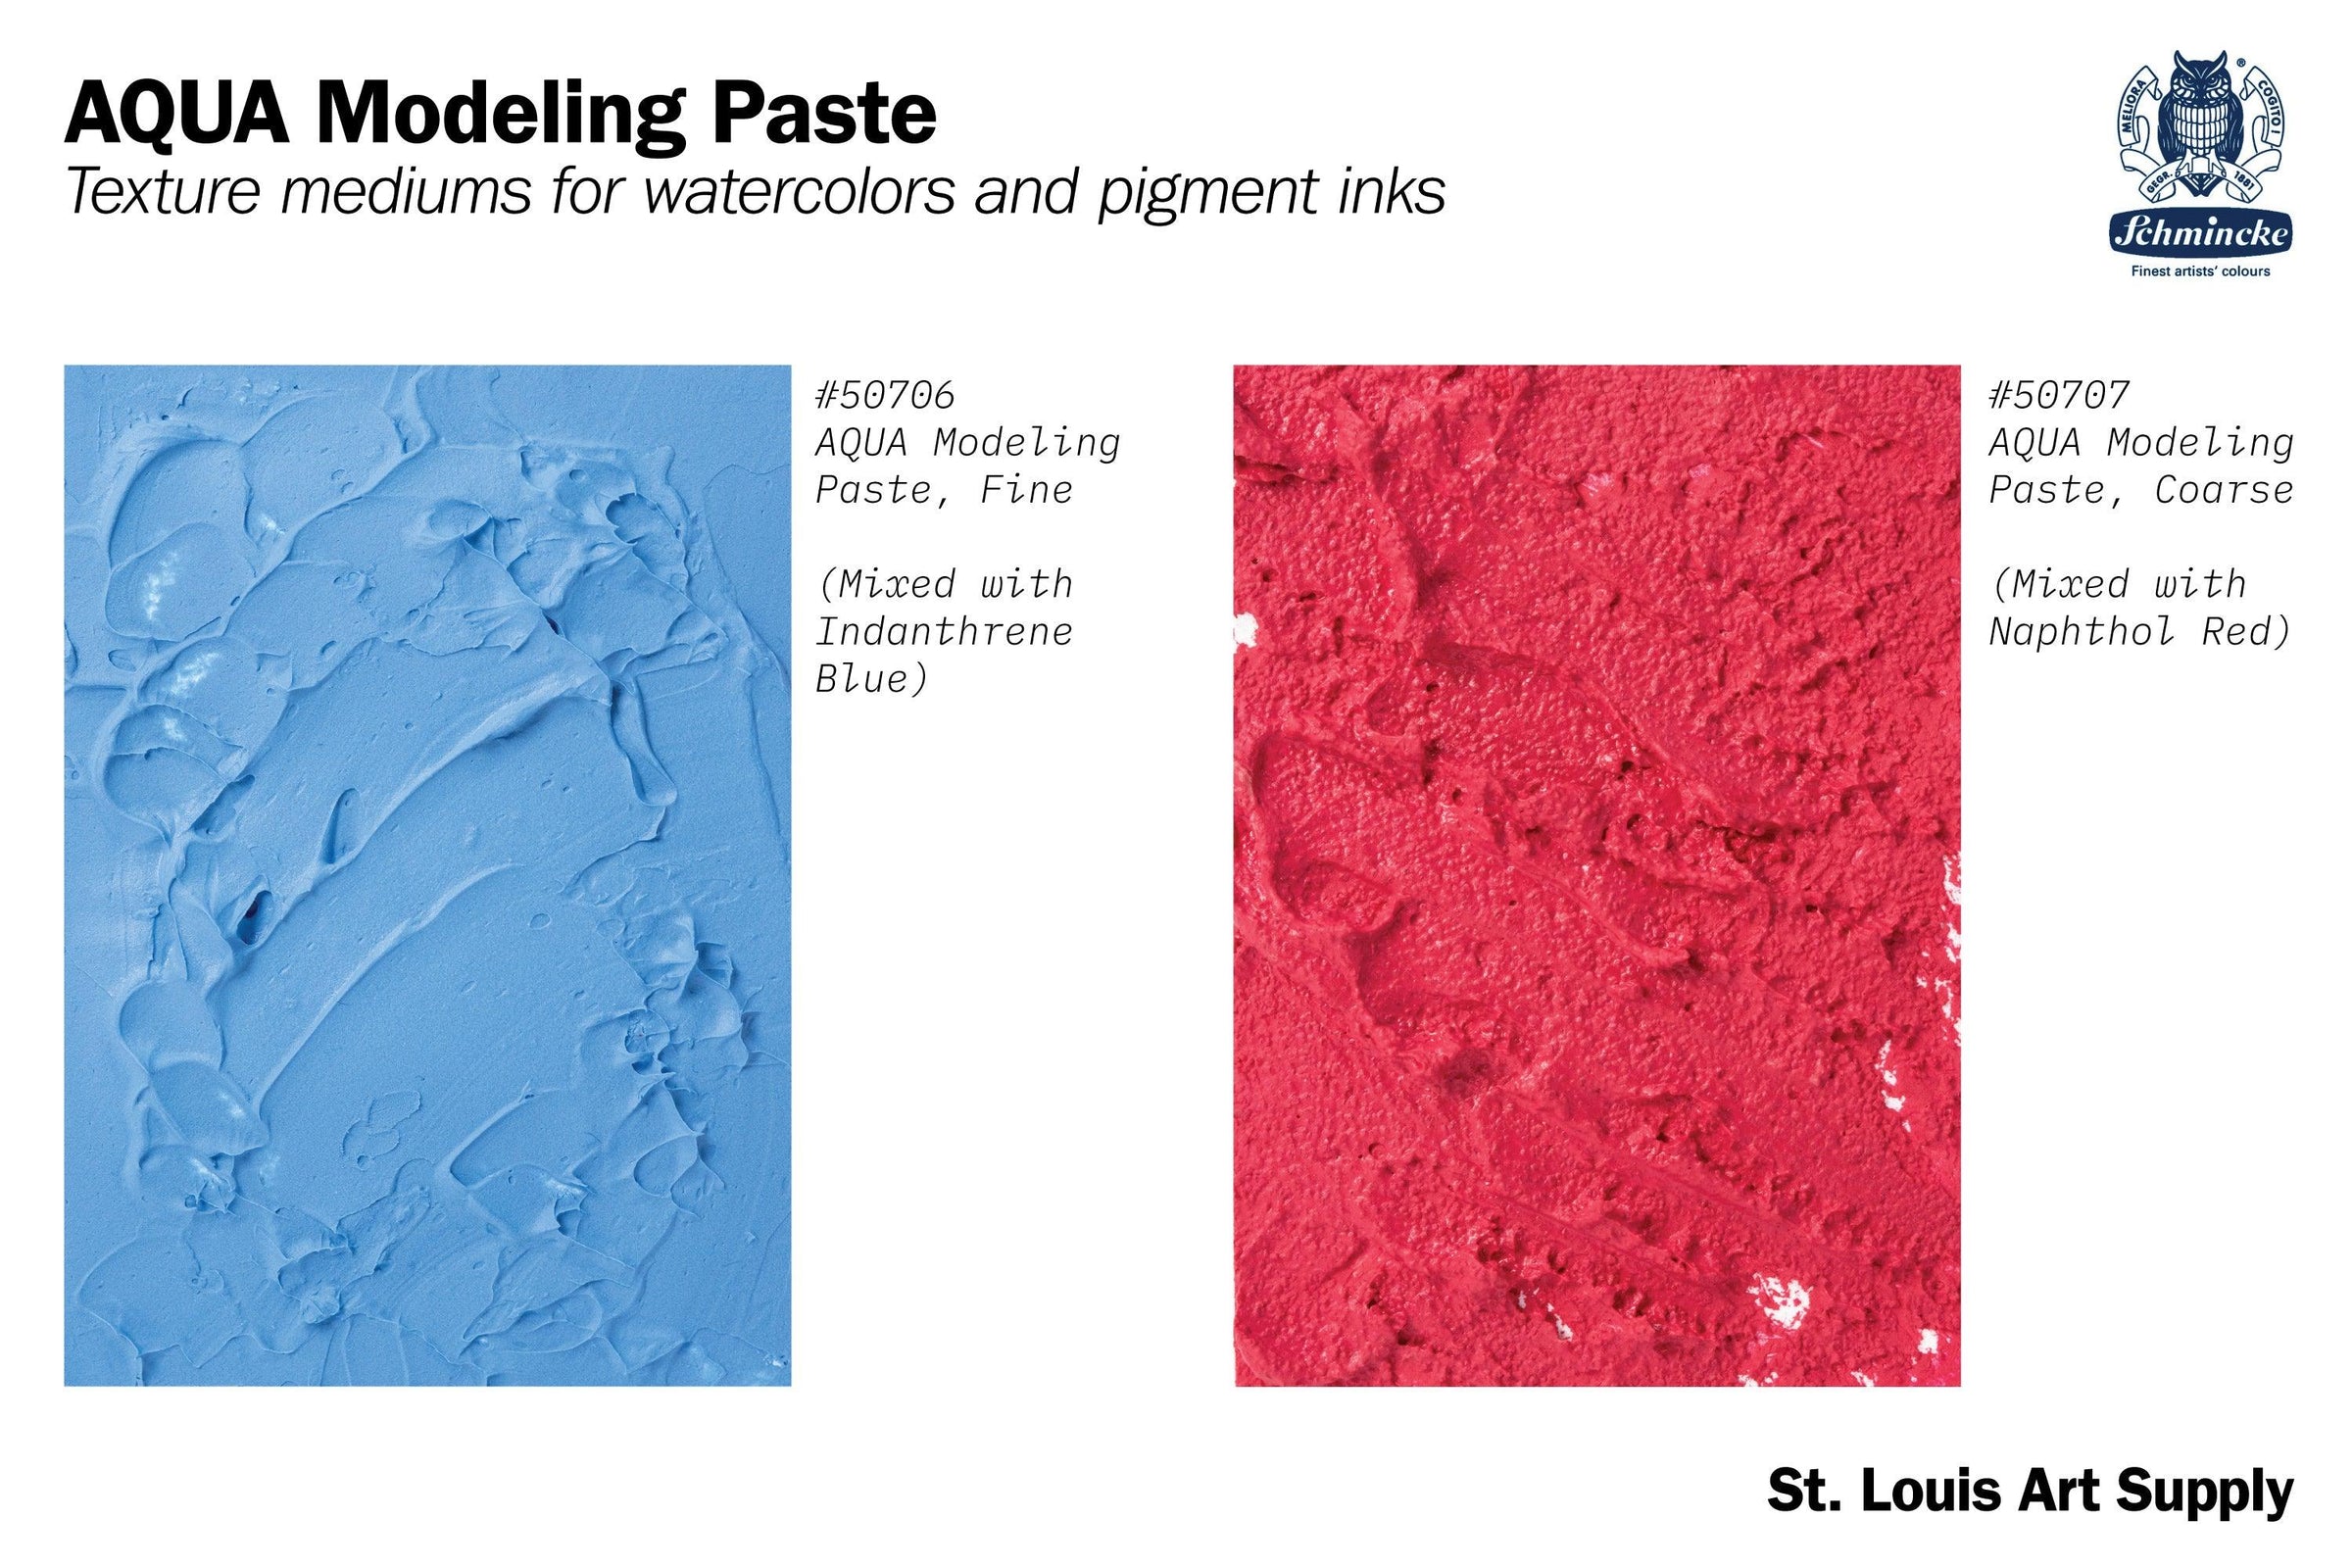 Schmincke AQUA Modeling Paste, Fine – St. Louis Art Supply